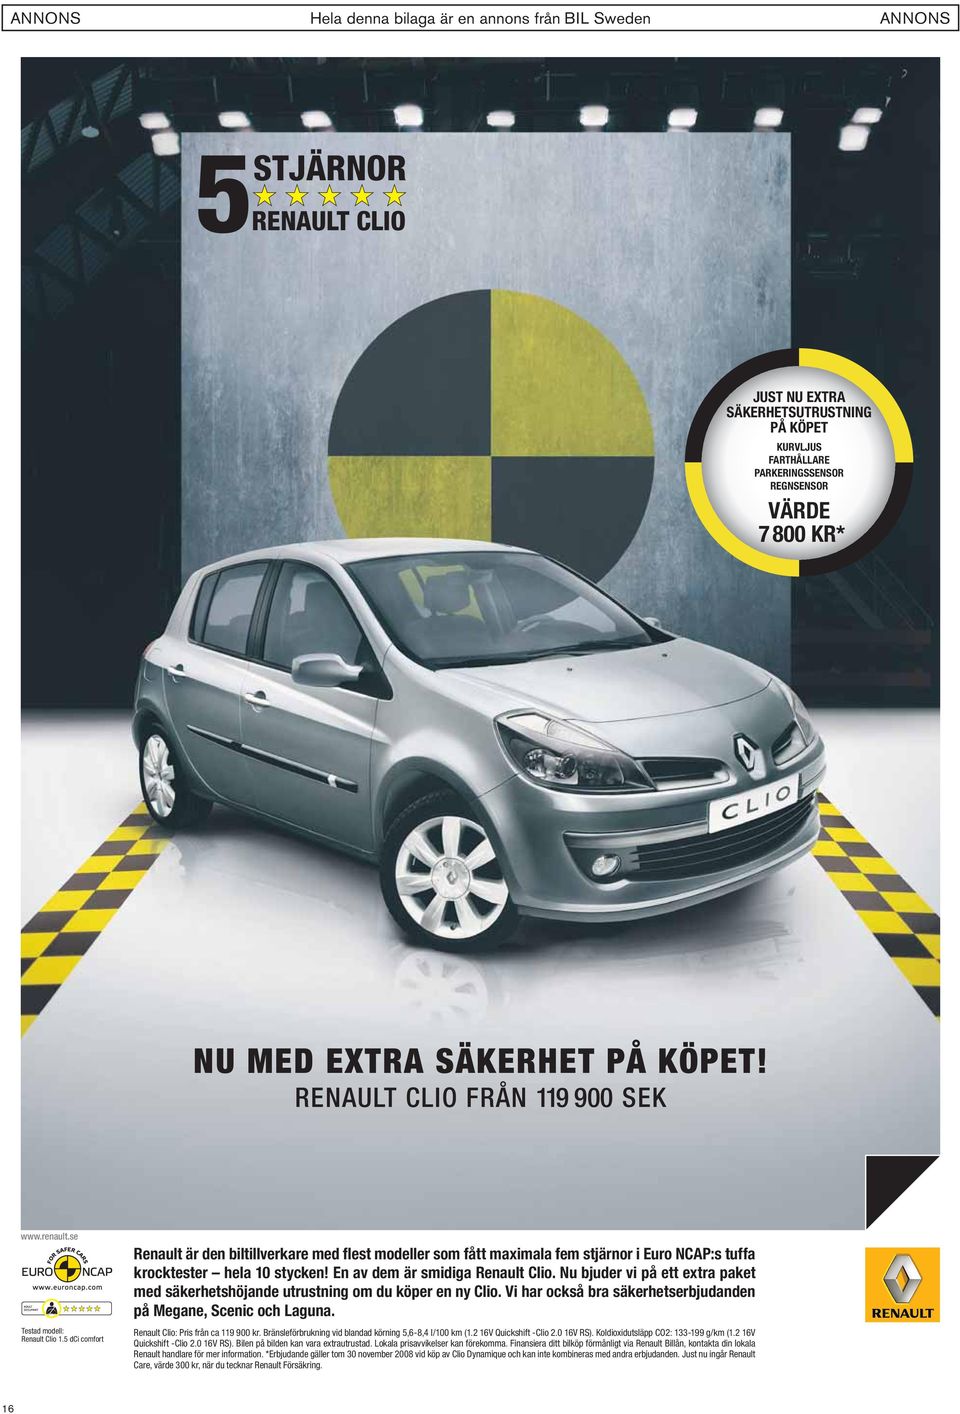 En av dem är smidiga Renault Clio. Nu bjuder vi på ett extra paket med säkerhetshöjande utrustning om du köper en ny Clio. Vi har också bra säkerhetserbjudanden på Megane, Scenic och Laguna.